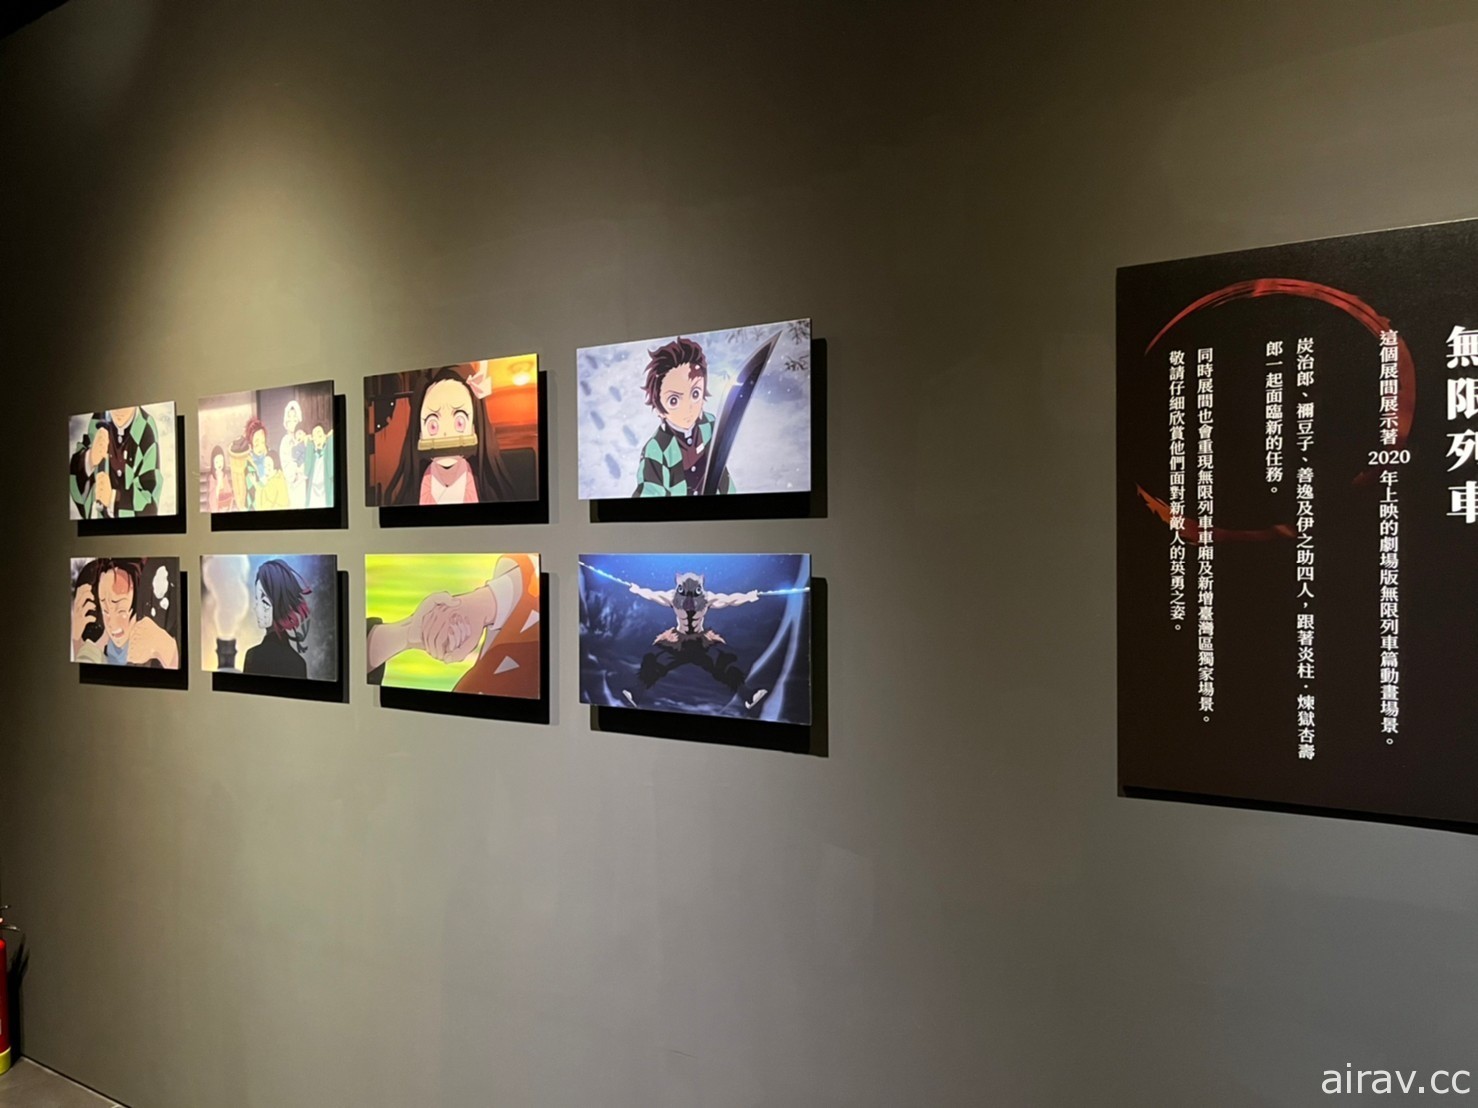 「鬼滅之刃 全集中展」首度移師海外 亞洲巡迴第一站台北 25 日正式開展